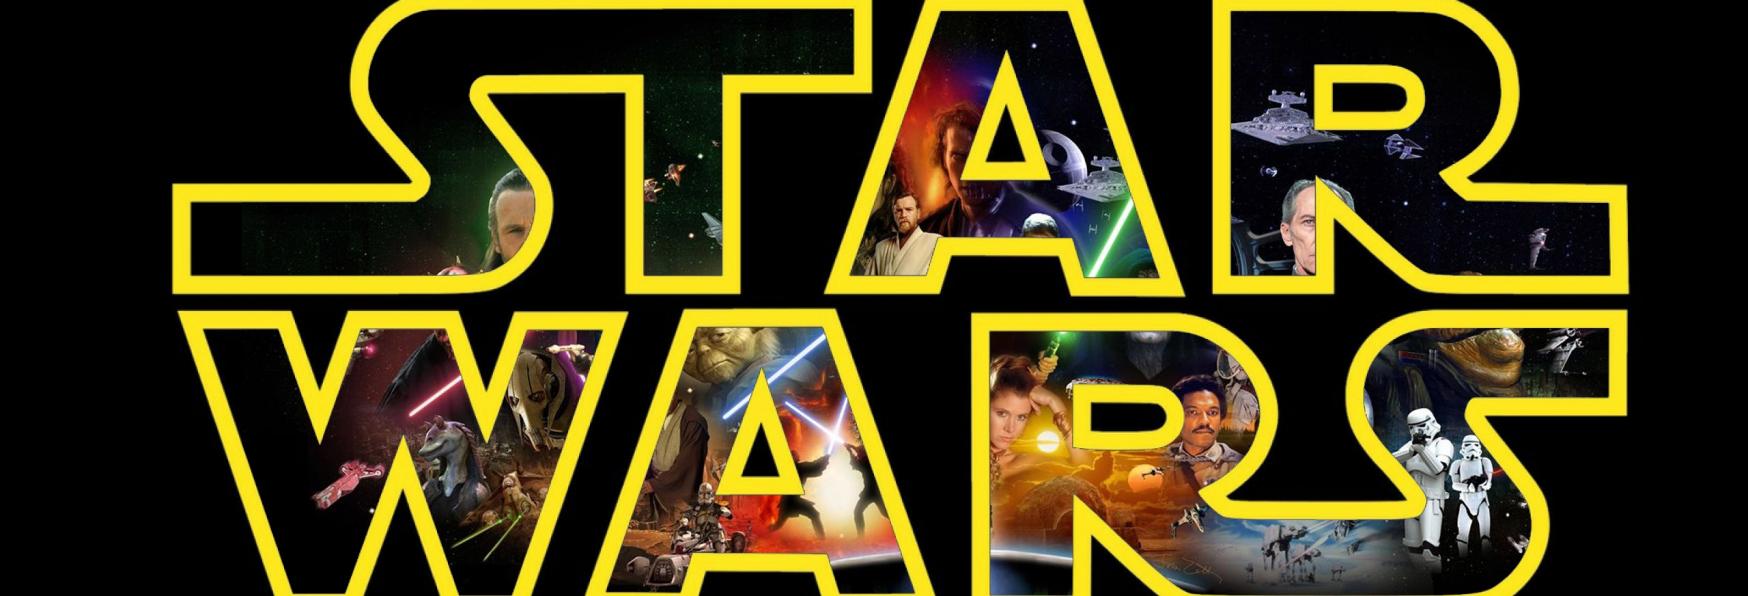 Star Wars: Tales of the Jedi - Il Logo e il Periodo di Uscita della nuova Serie Animata di Disney+